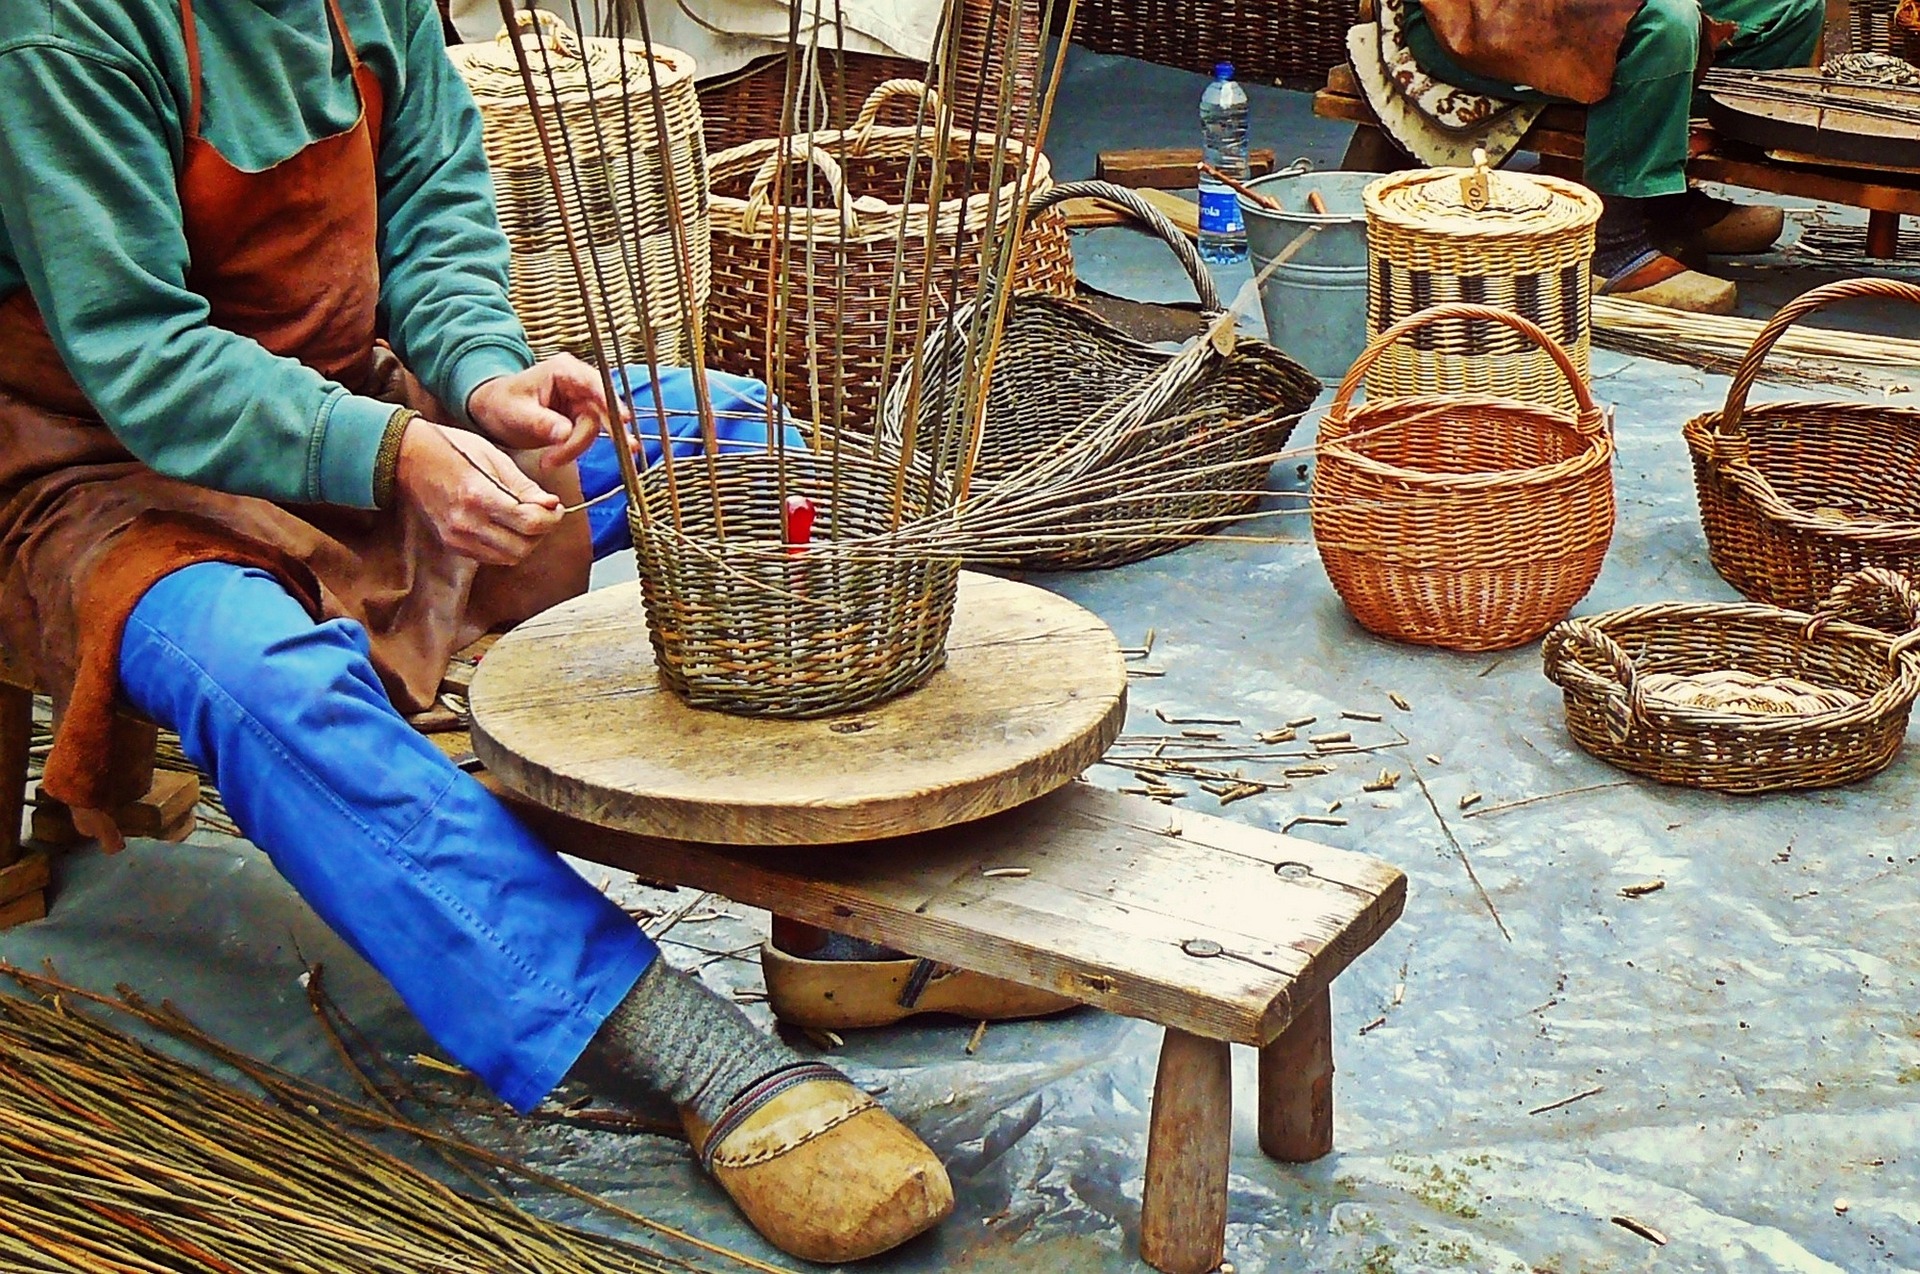 Eine Person sitzt und flicht einen Korb. Im Hintergrund stehen weitere selbstgemachte Körbe aus verschiedenen Naturmaterialien